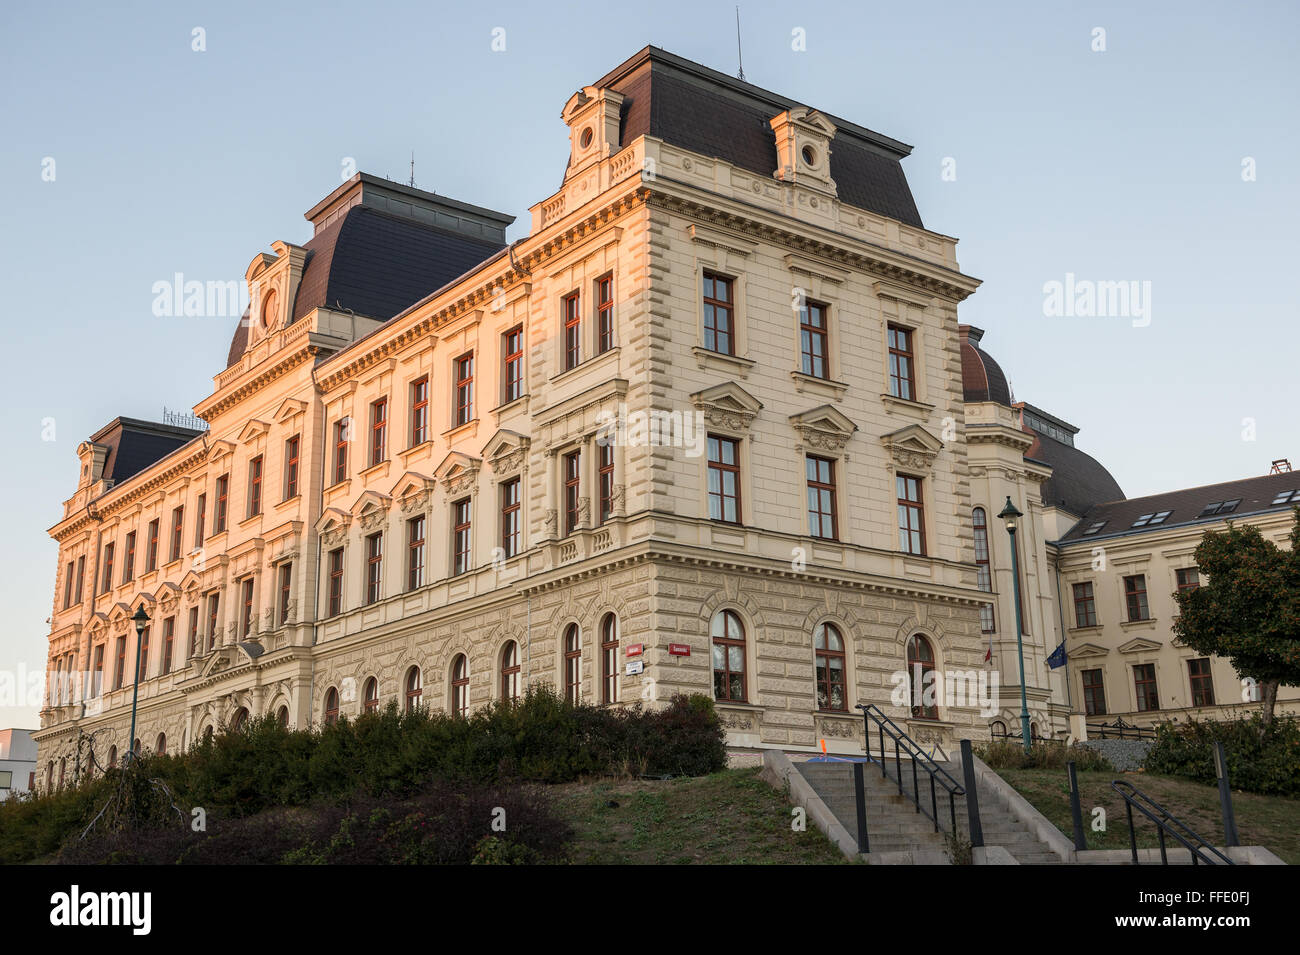 Bâtiment de cour de district de la ville de Pilsen (Plzen), région de la Bohême en République Tchèque Banque D'Images